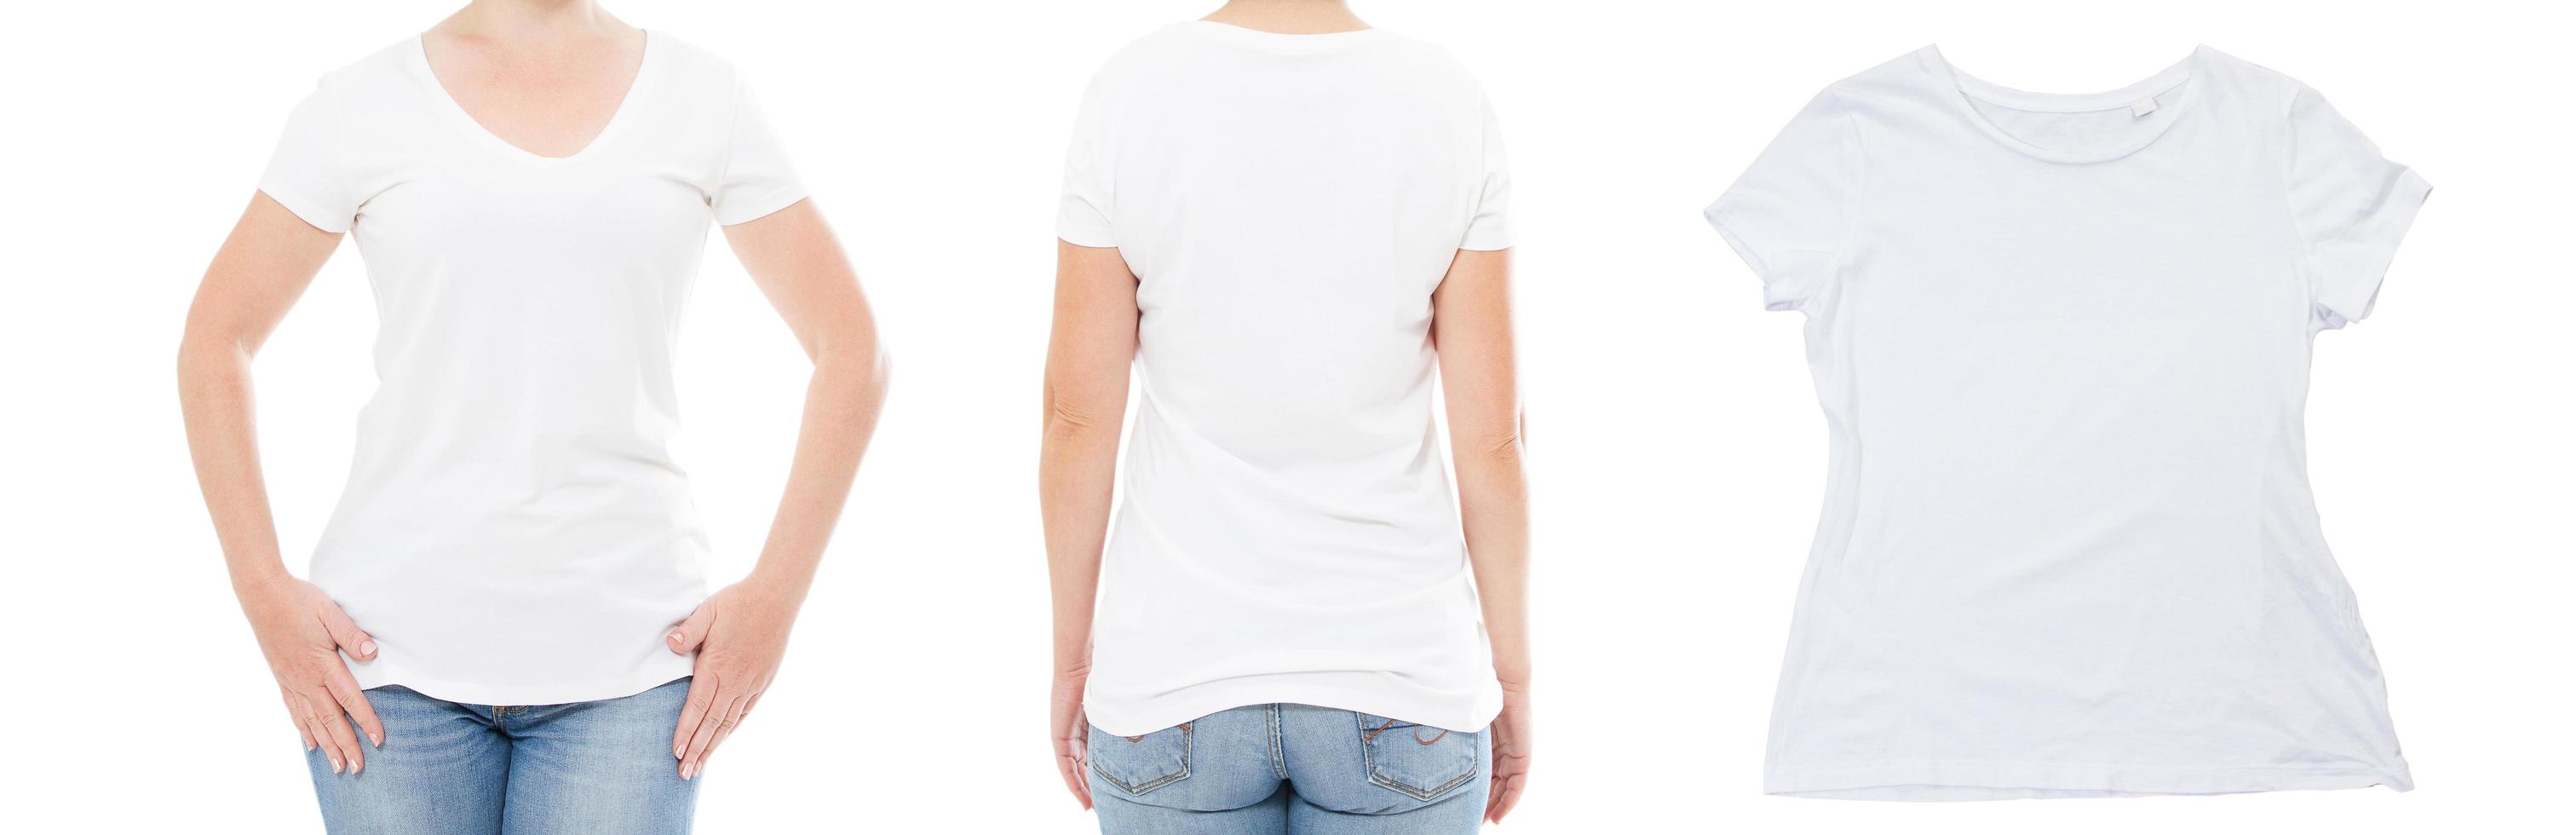 dama en conjunto de camisetas de copia vista frontal y posterior, fondo de de camiseta blanca vacía 5208660 Foto de stock en Vecteezy